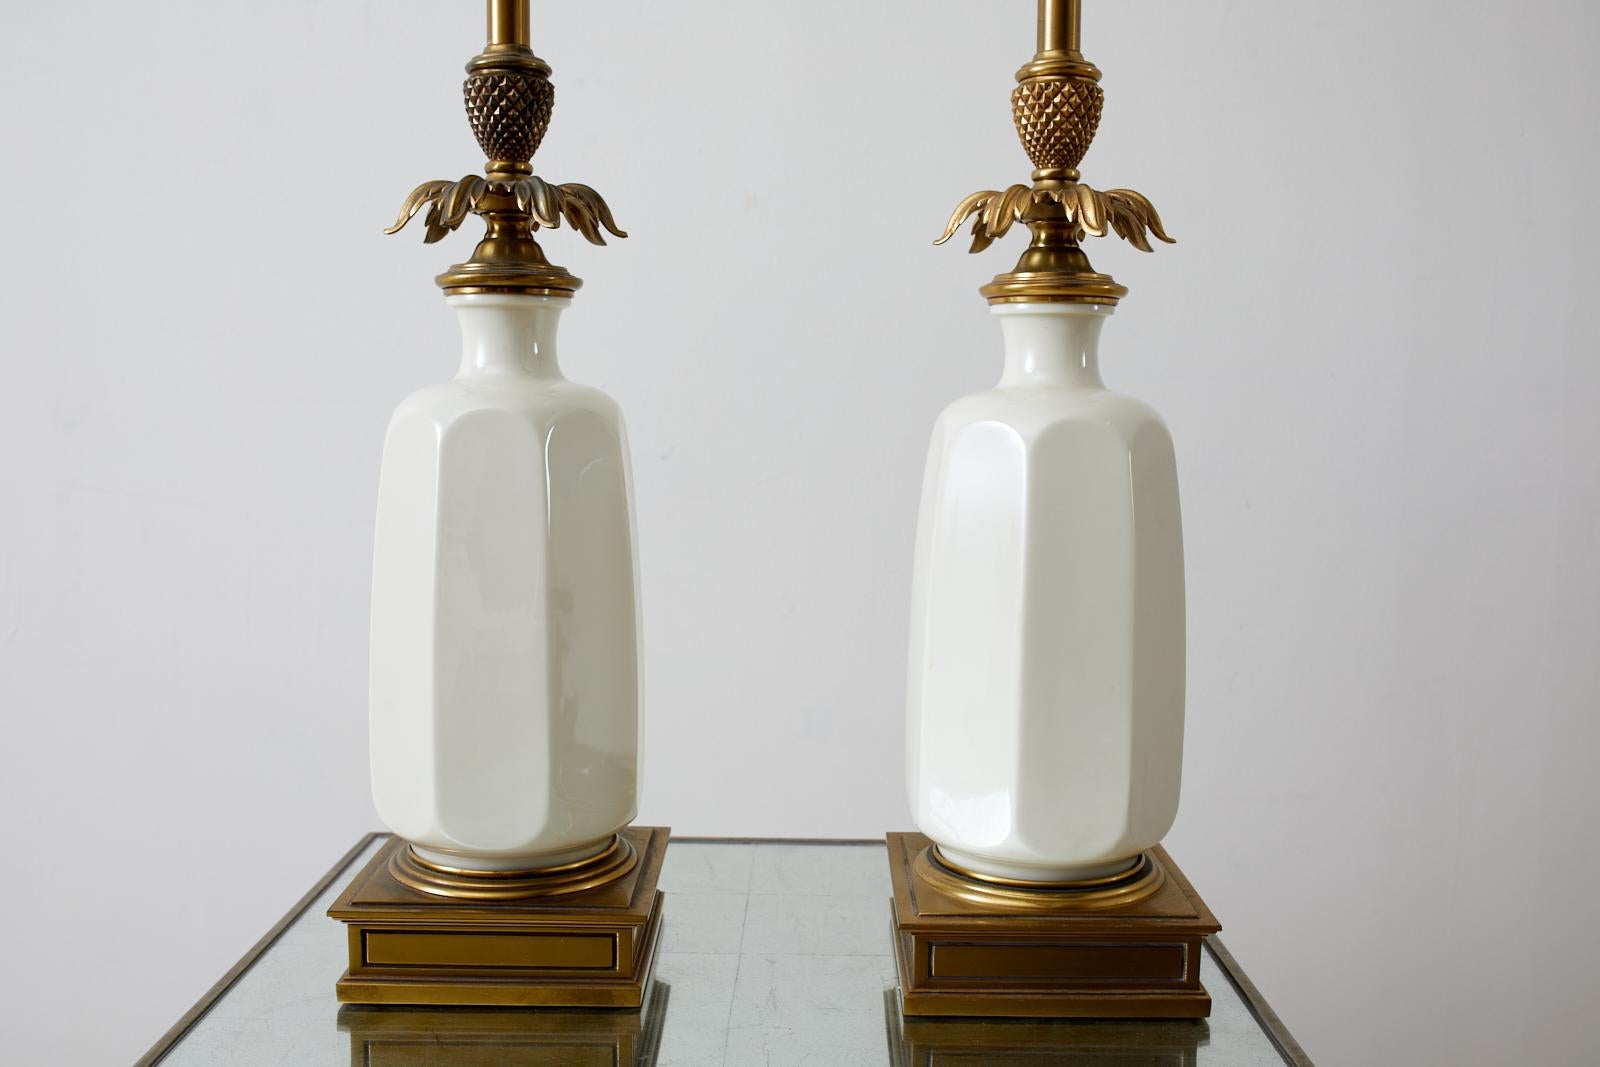 Zwei wunderschöne Hollywood Regency Stiffel Lampen mit einem Lenox Porzellan Vase Form Körper und mit einem klassischen Messing Blatt Ananas Spacer und Sockel. Originaler langer Messingstiel im Fackelstil mit einem Milchglasdiffusor. Die geformten